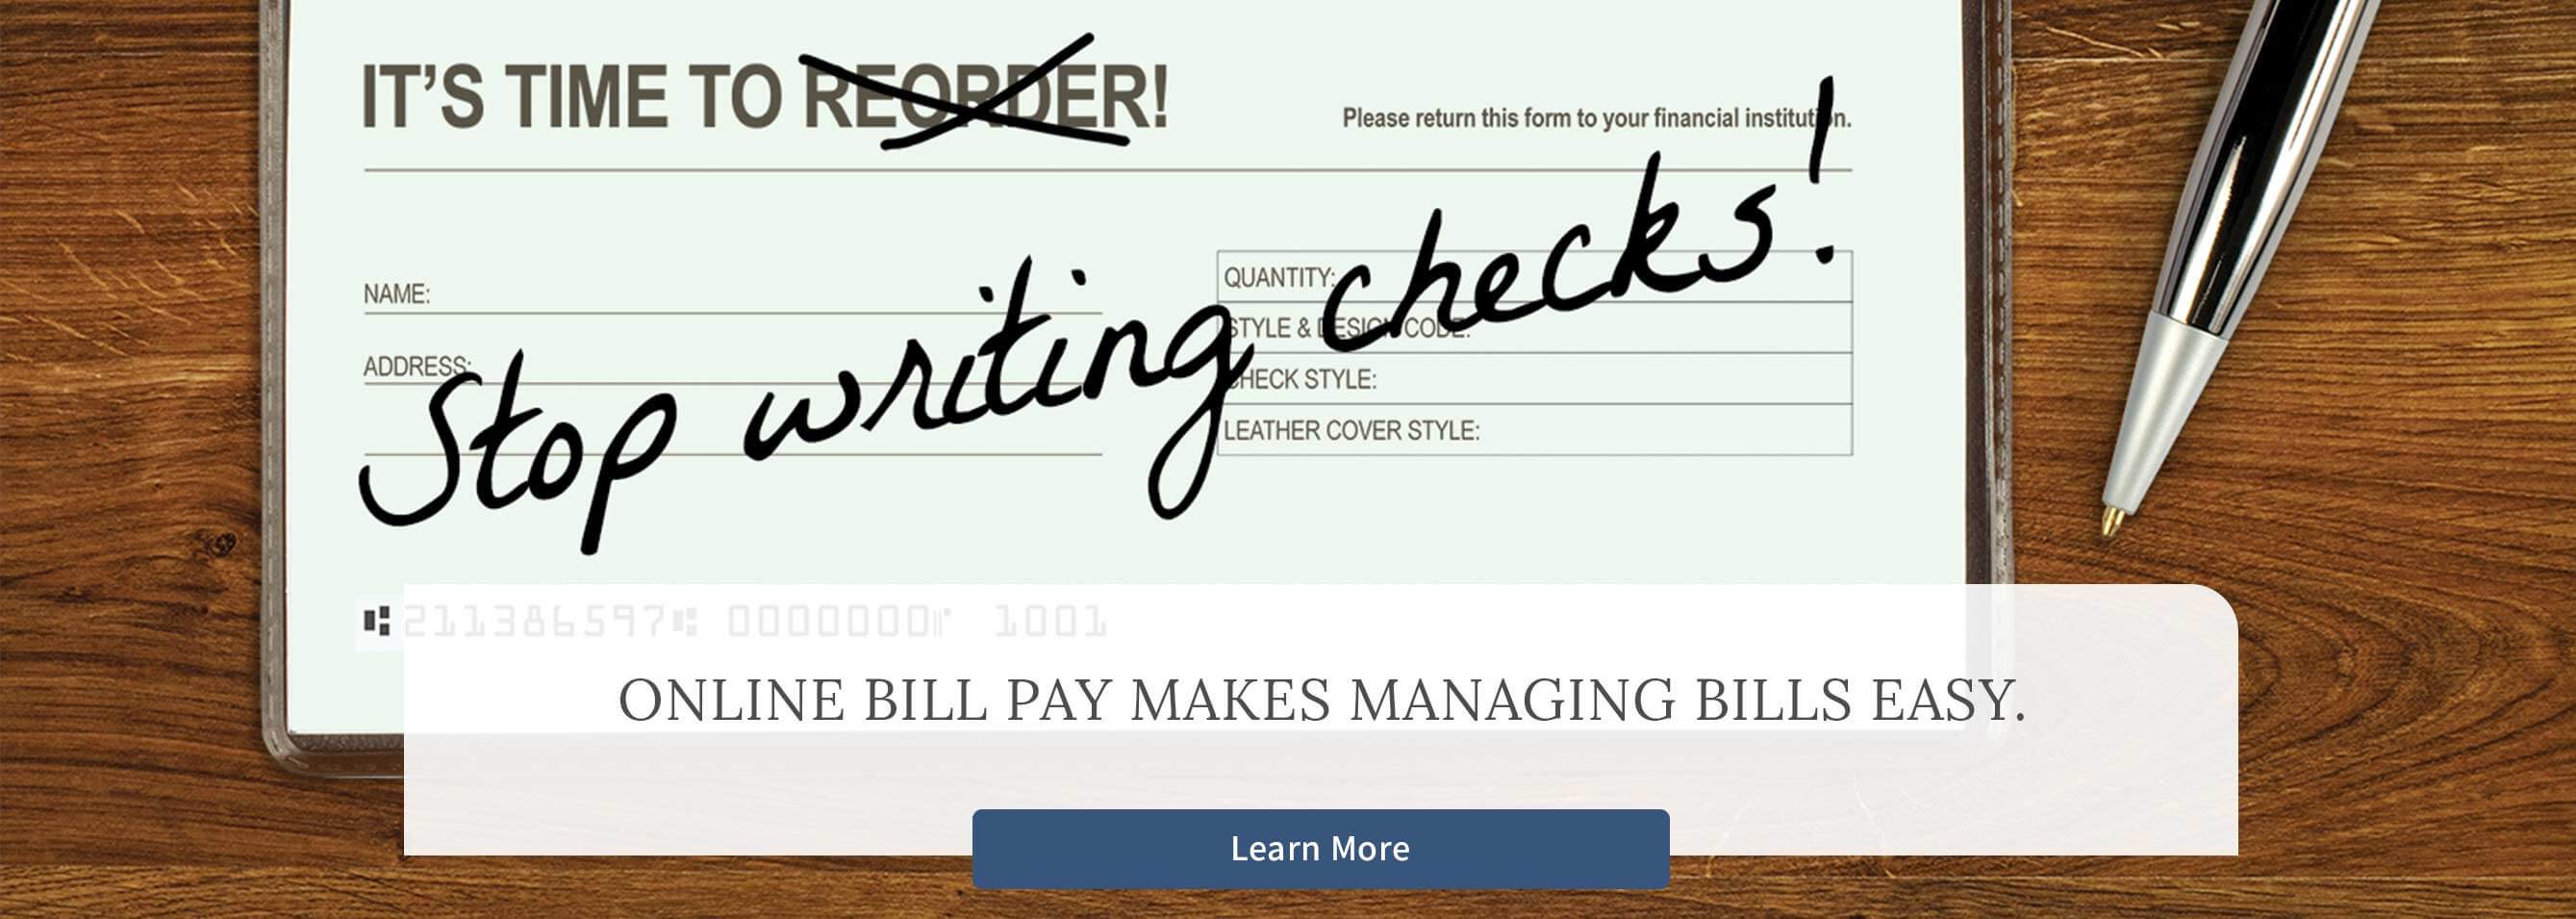 Online bill pay makes managing bills easy